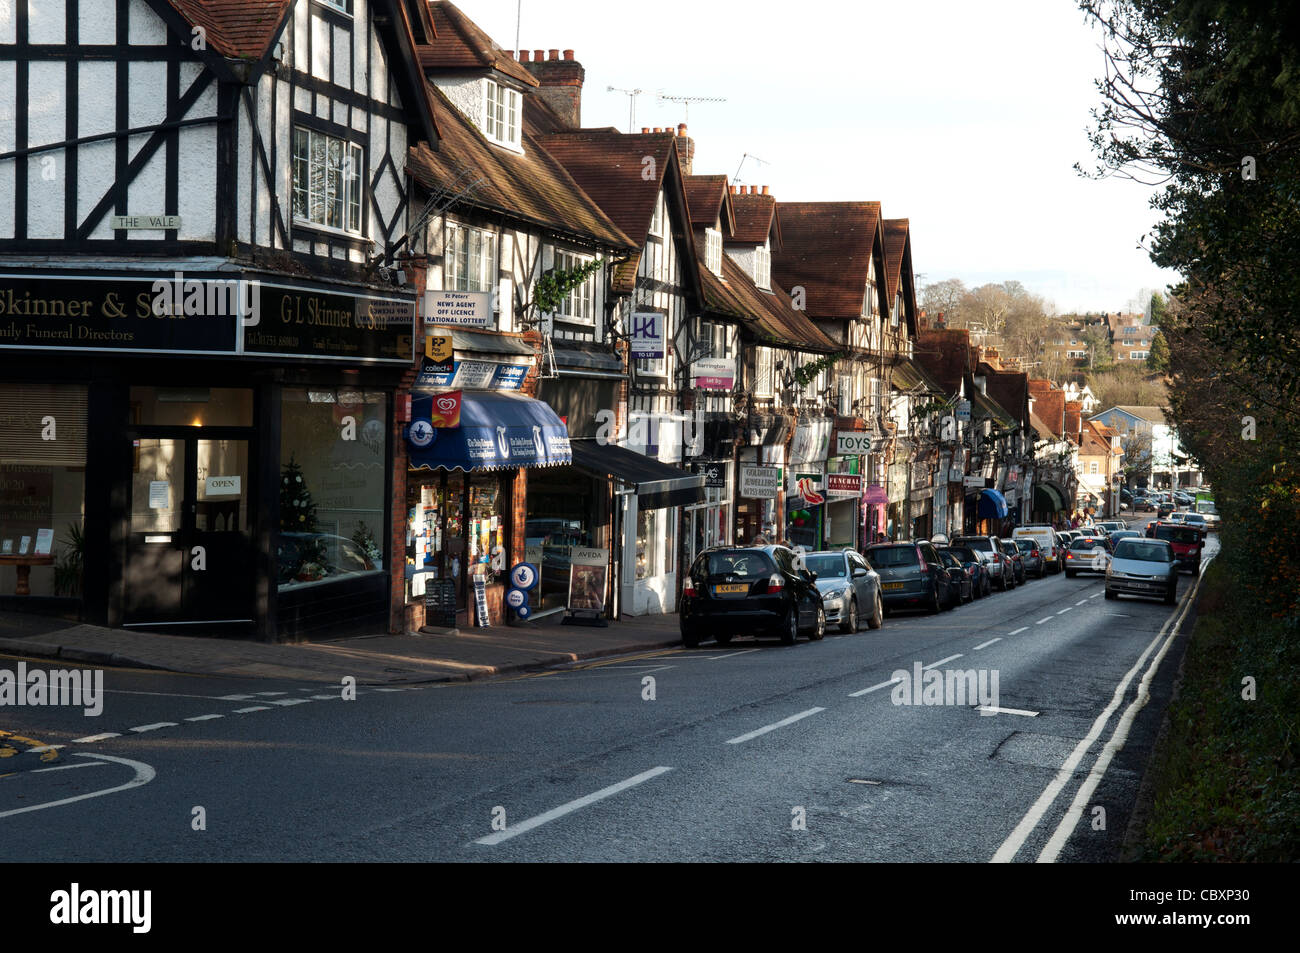 Eine traditionelle Reihe von kleinen Läden und Geschäfte in Ortsmitte Marktplatz Chalfont St. Peter Bucks UK Stockfoto